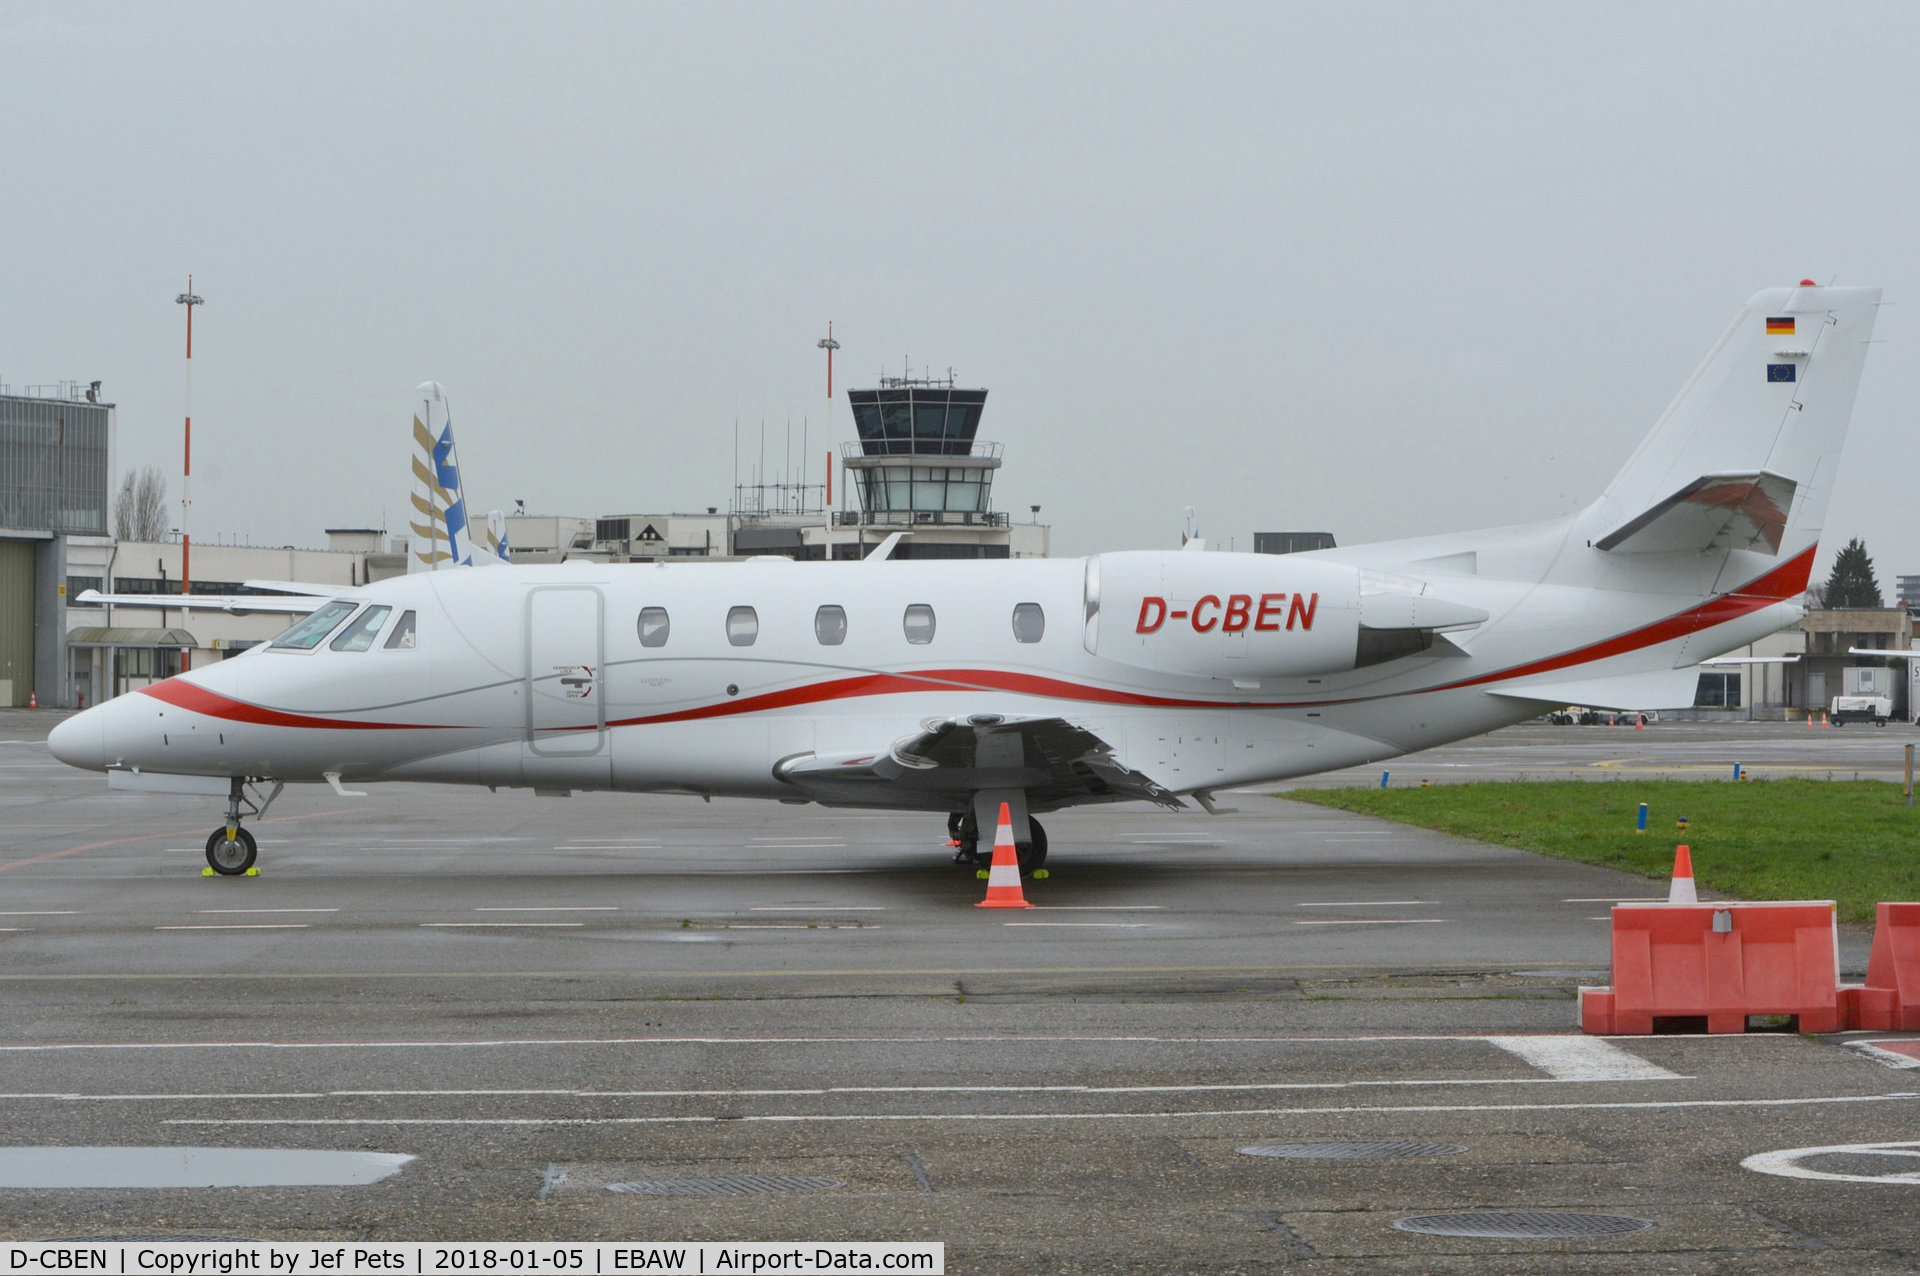 D-CBEN, 2011 Cessna 560XL Citation XLS C/N 560-6089, At Antwerp Airport.